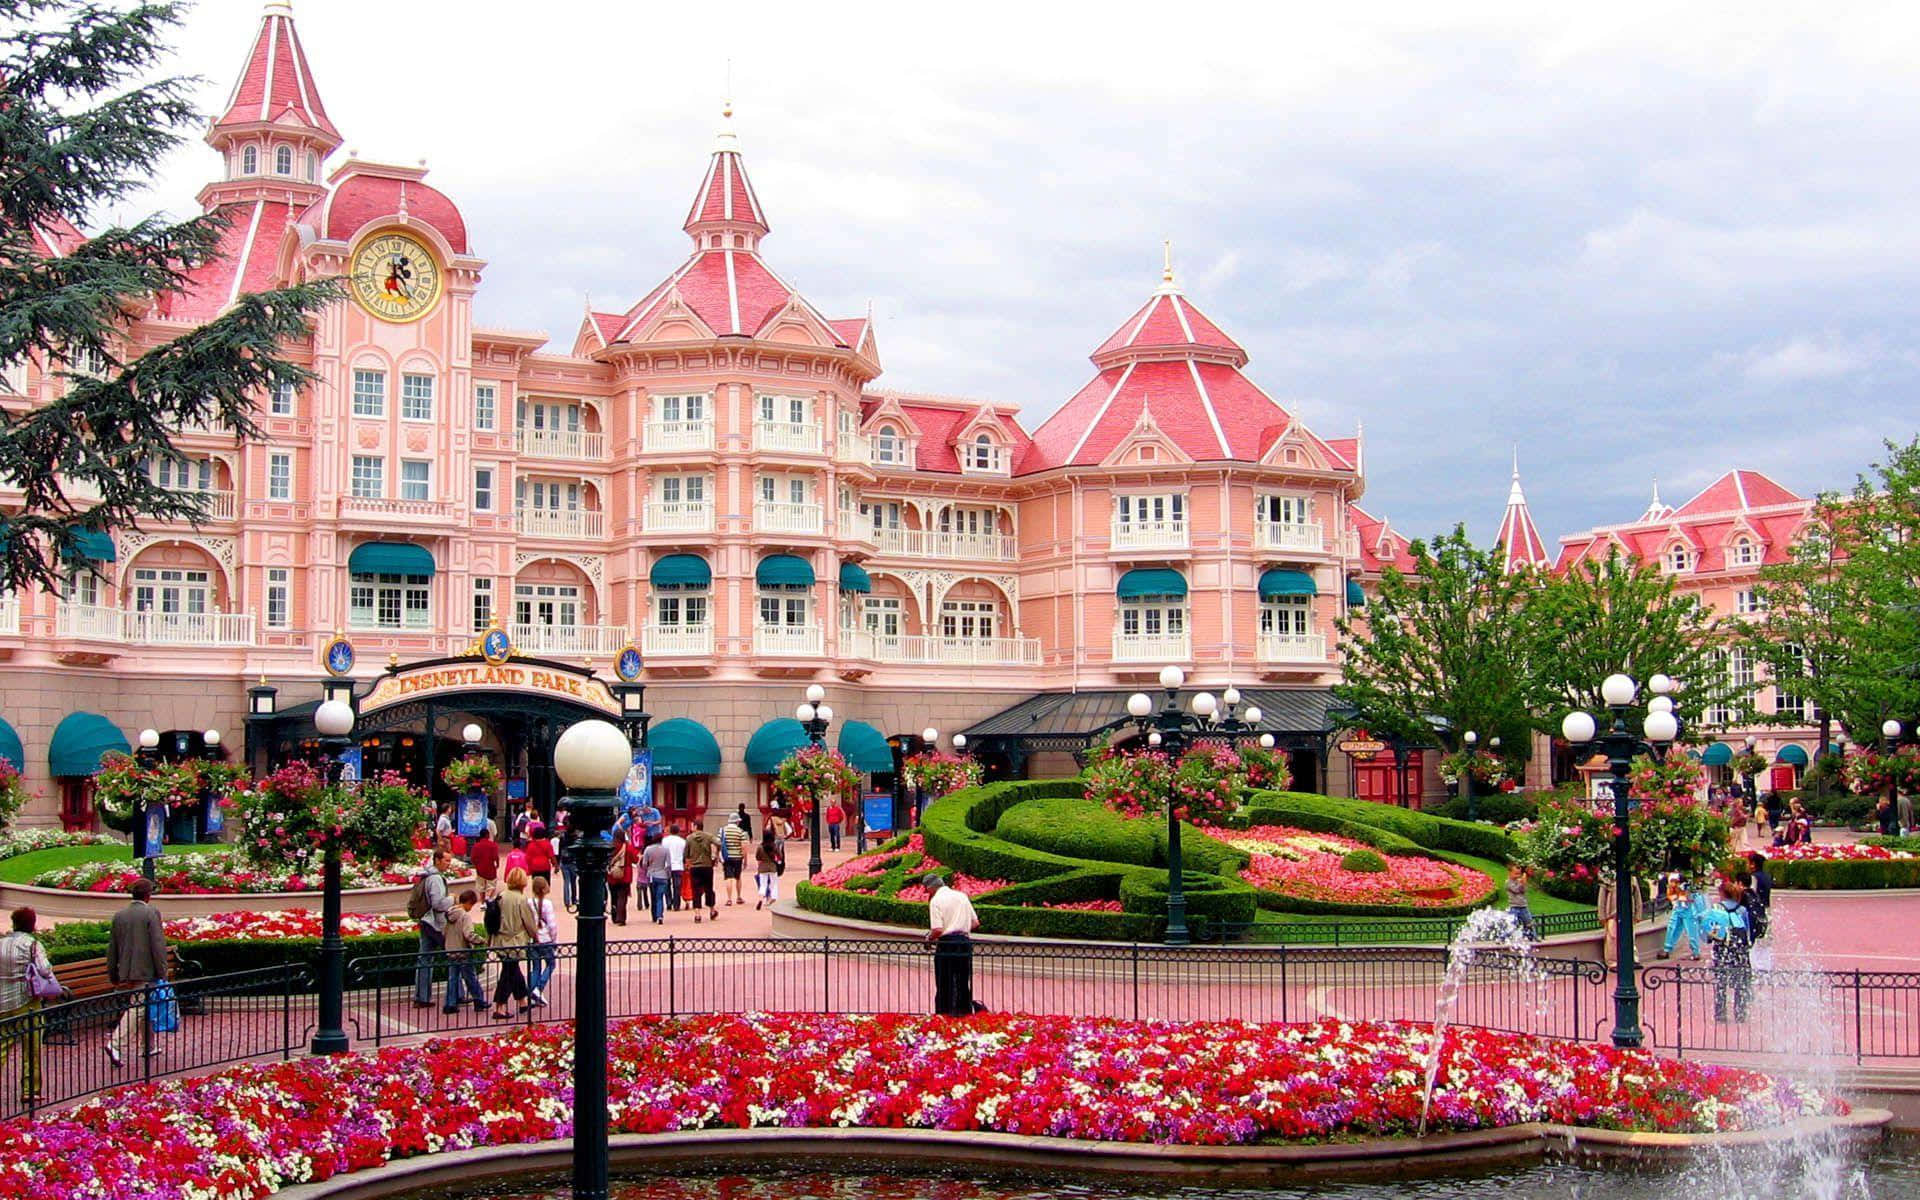 Lassensie Sich Von Der Magie Von Disneyland In Eine Zauberhafte Welt Entführen.